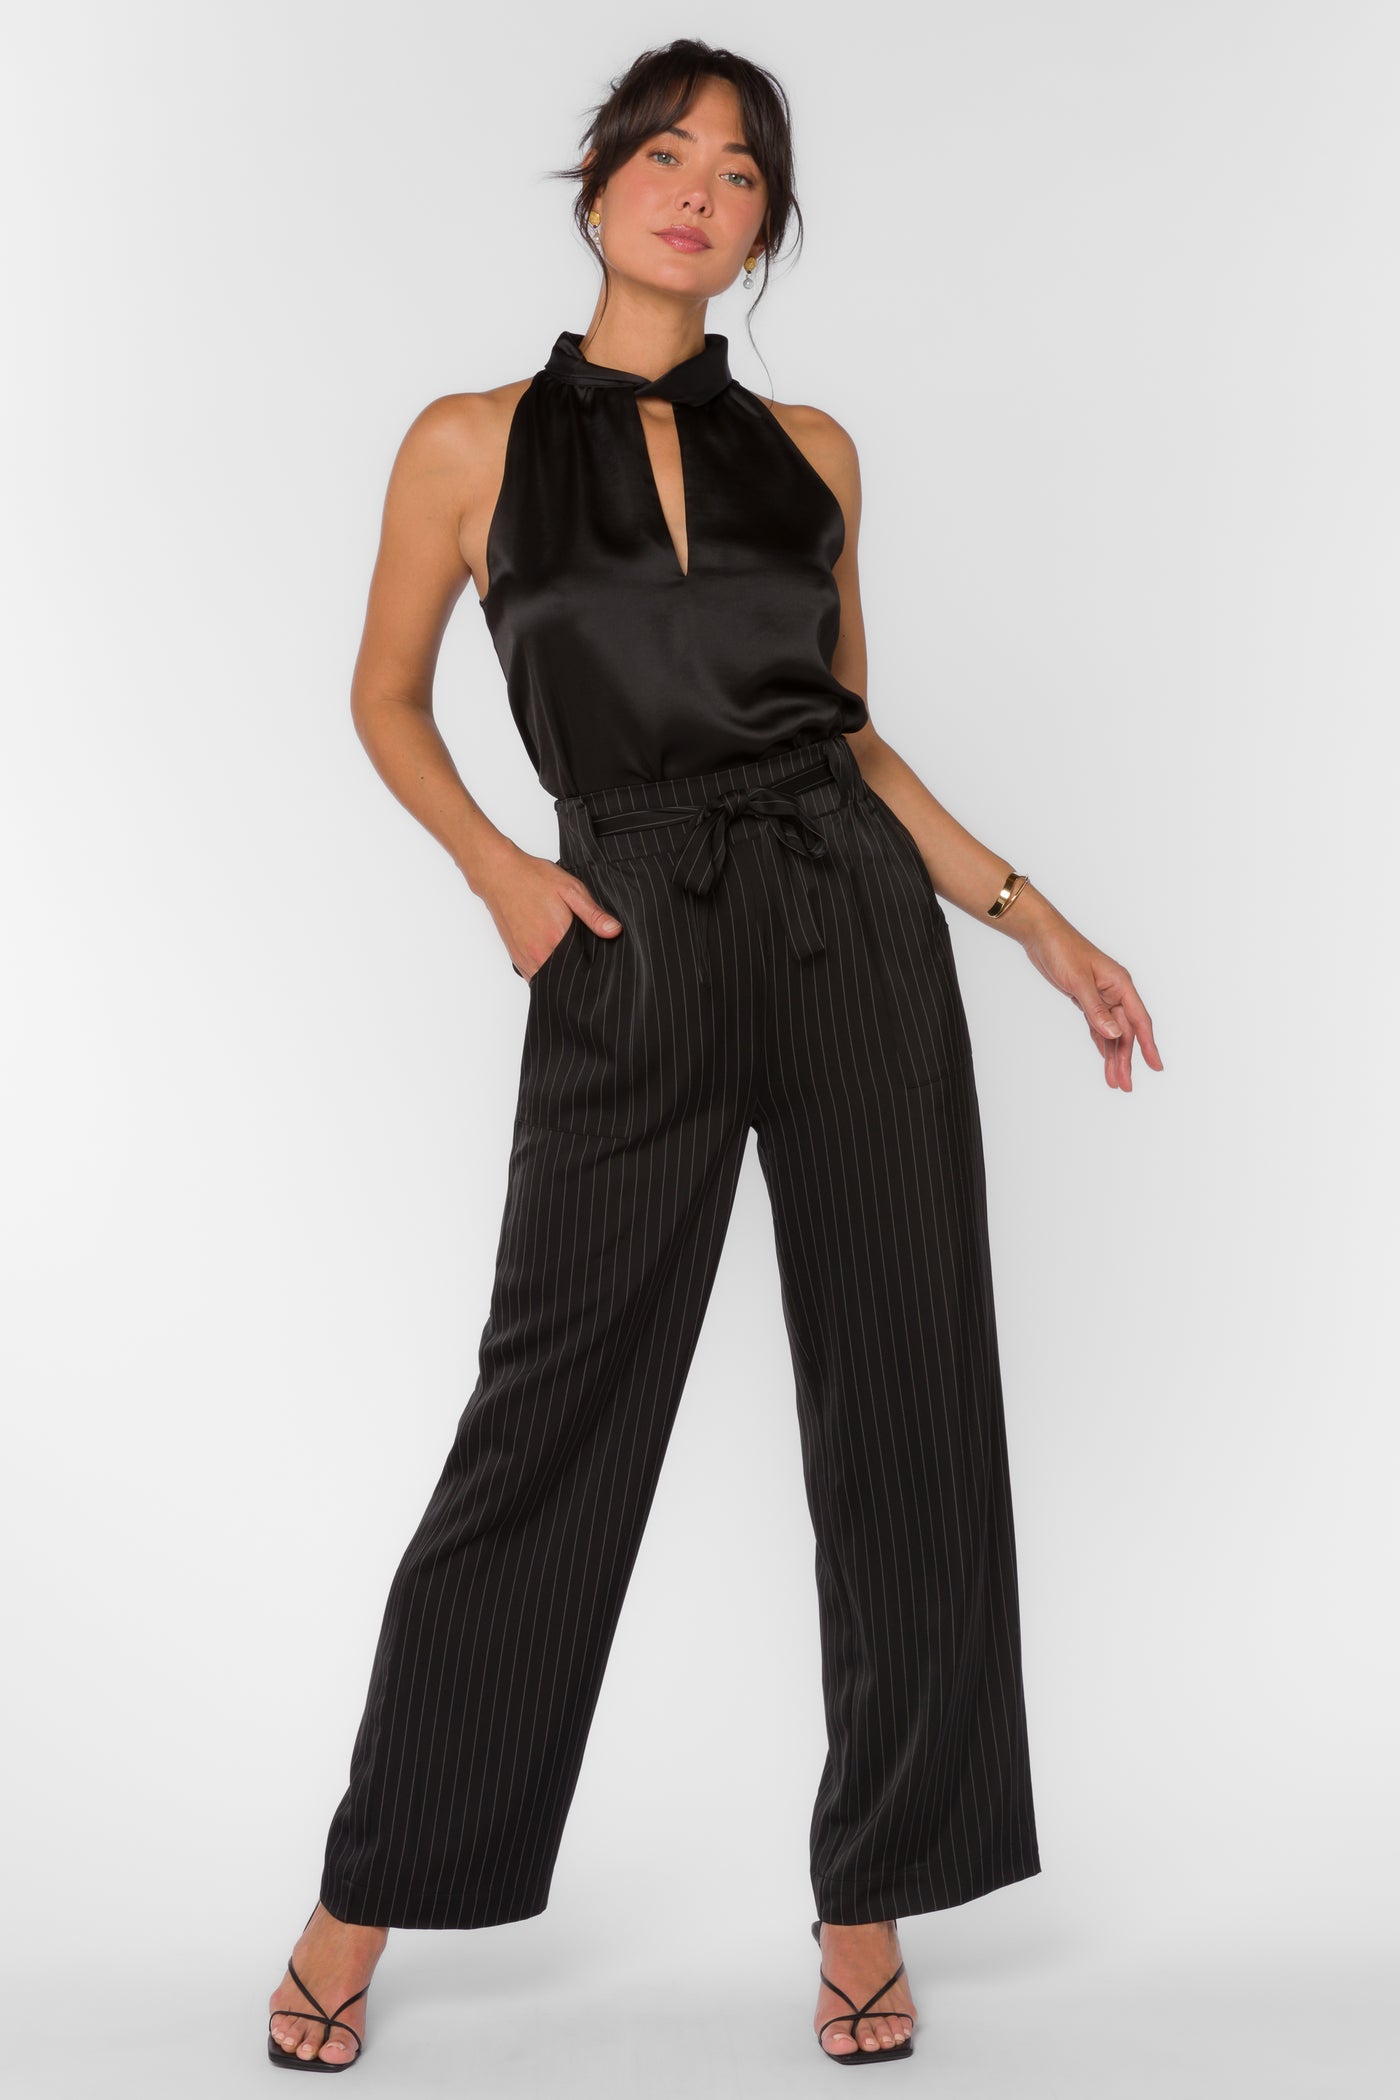 Angeline Black Stripe Pant by Velvet Heart Clothing: Angeline Black Stripe  Pant